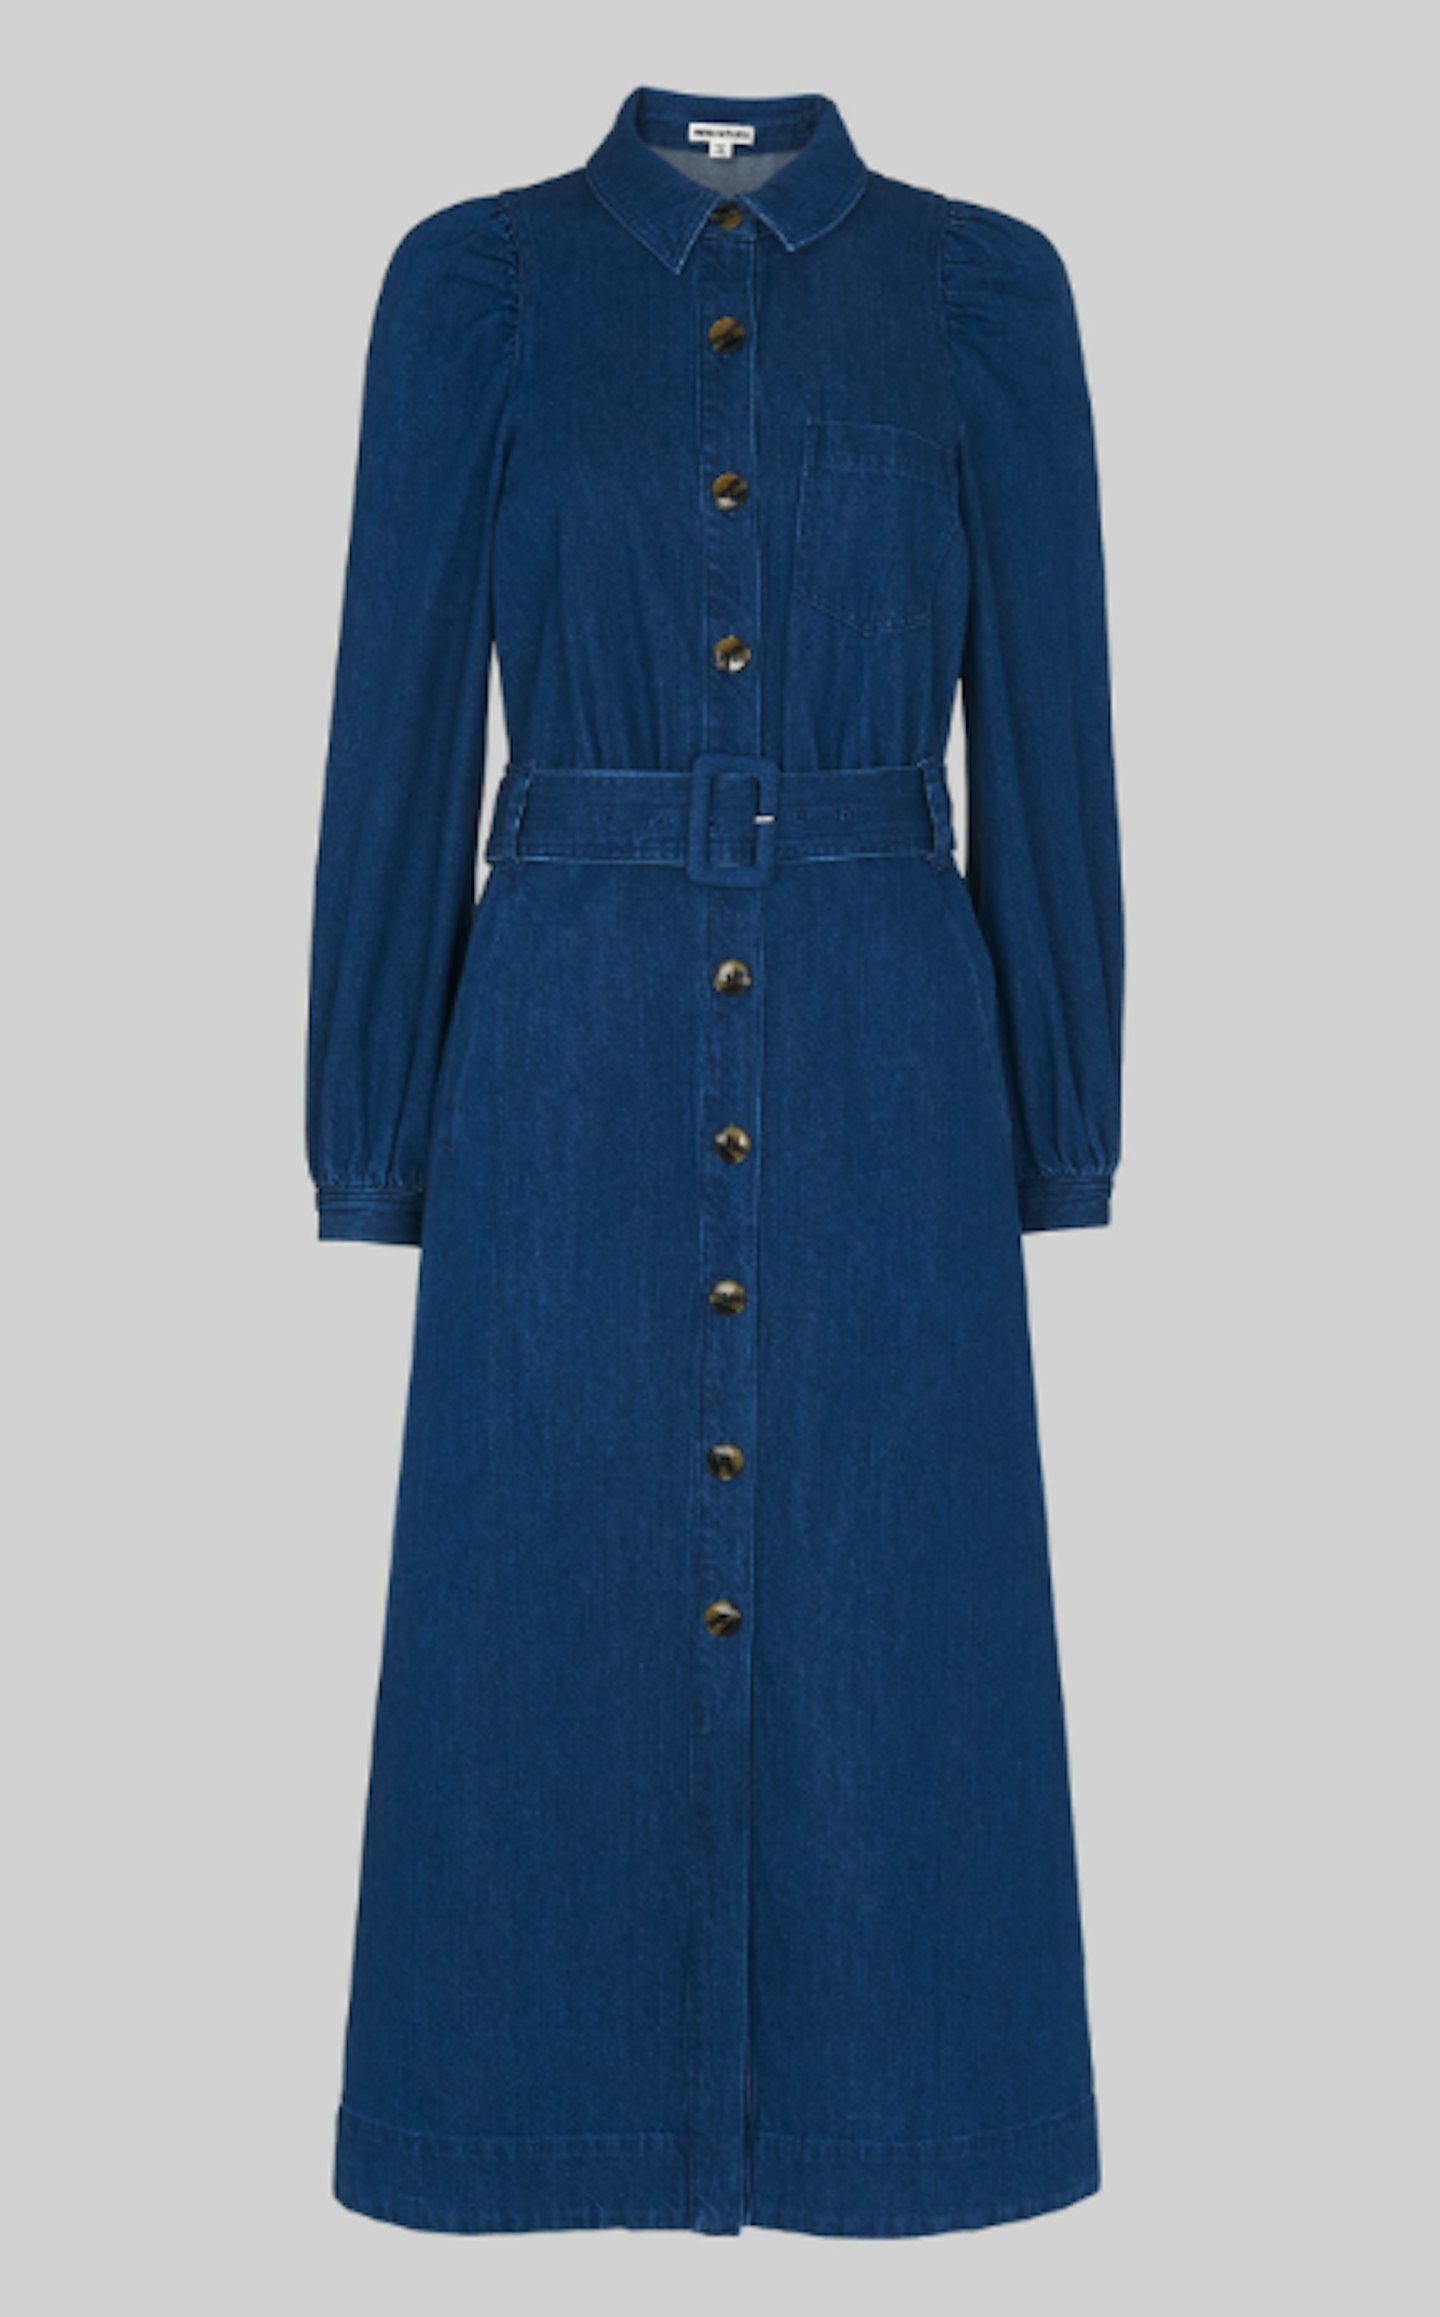 Whistles, Denim Belted Midi Dress, £139